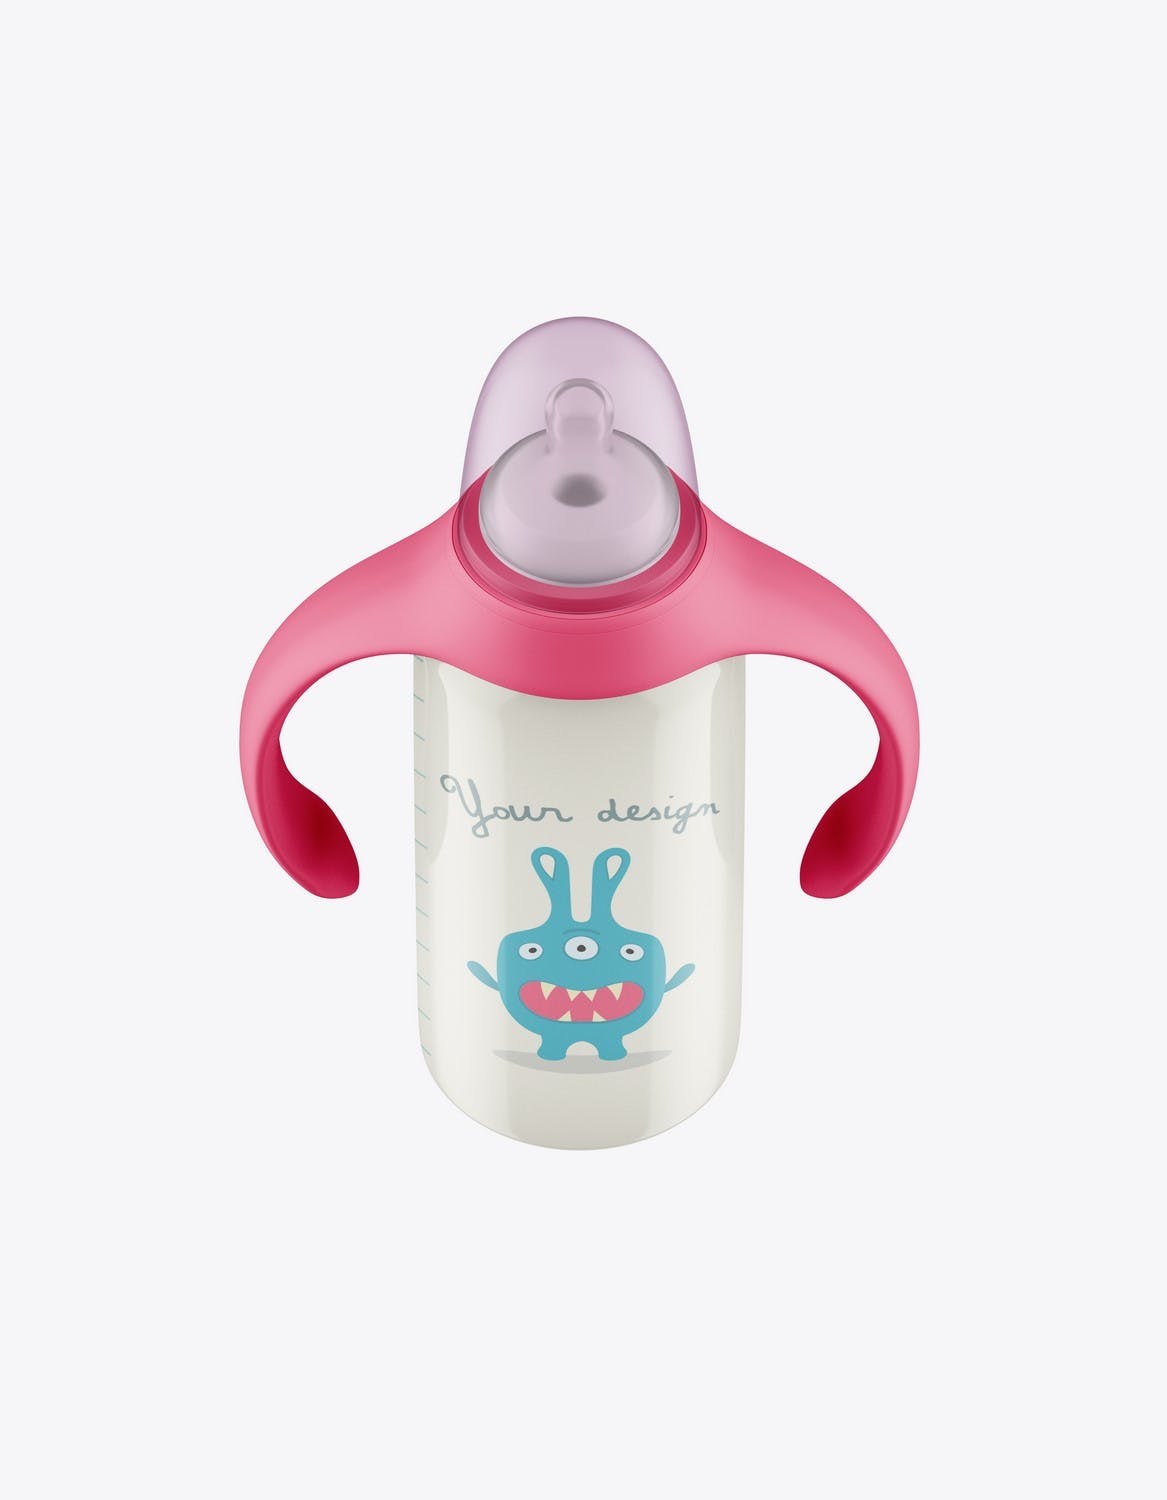 带把手的婴儿奶瓶包装设计样机 Baby Bottle with Handles Mockup 样机素材 第9张